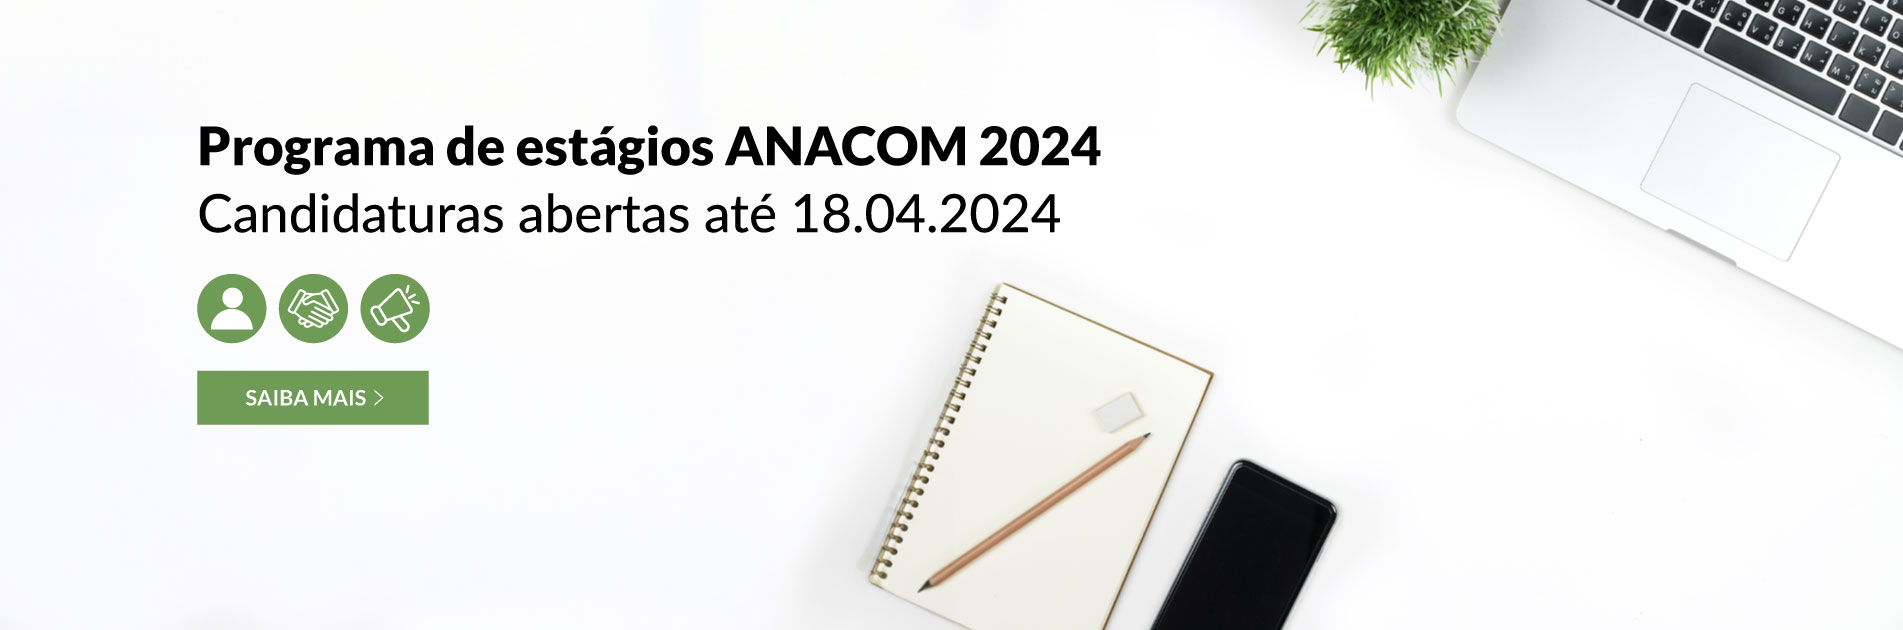 Programa de estágios da ANACOM em 2024